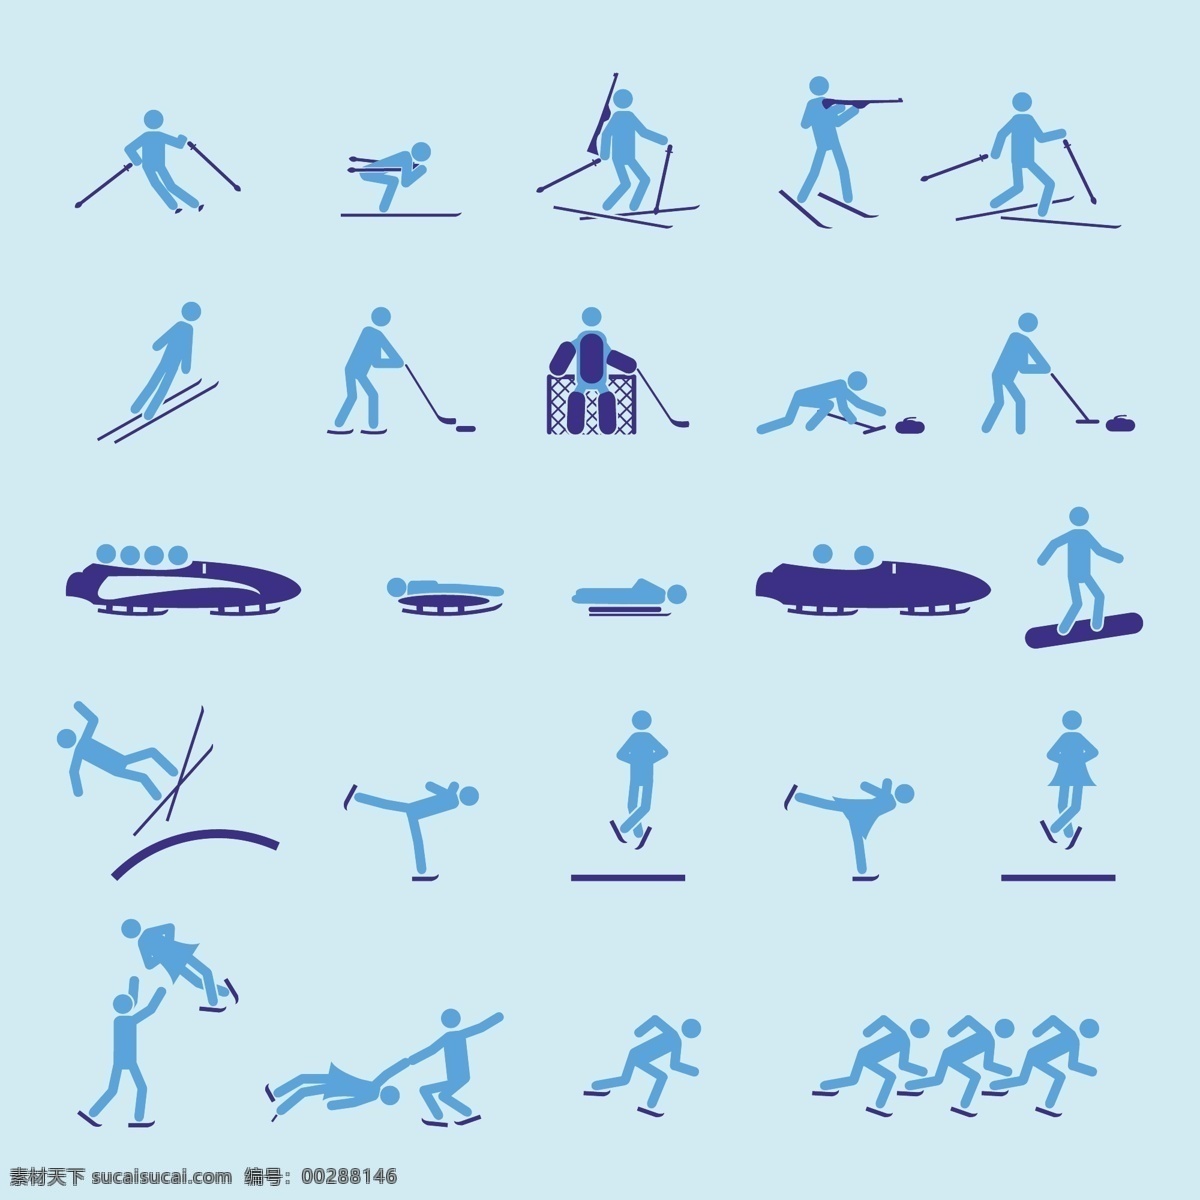 2008 奥运会 体育 项目 图标 运动 文化艺术 奥运 体育运动 生活百科 矢量素材 青色 天蓝色